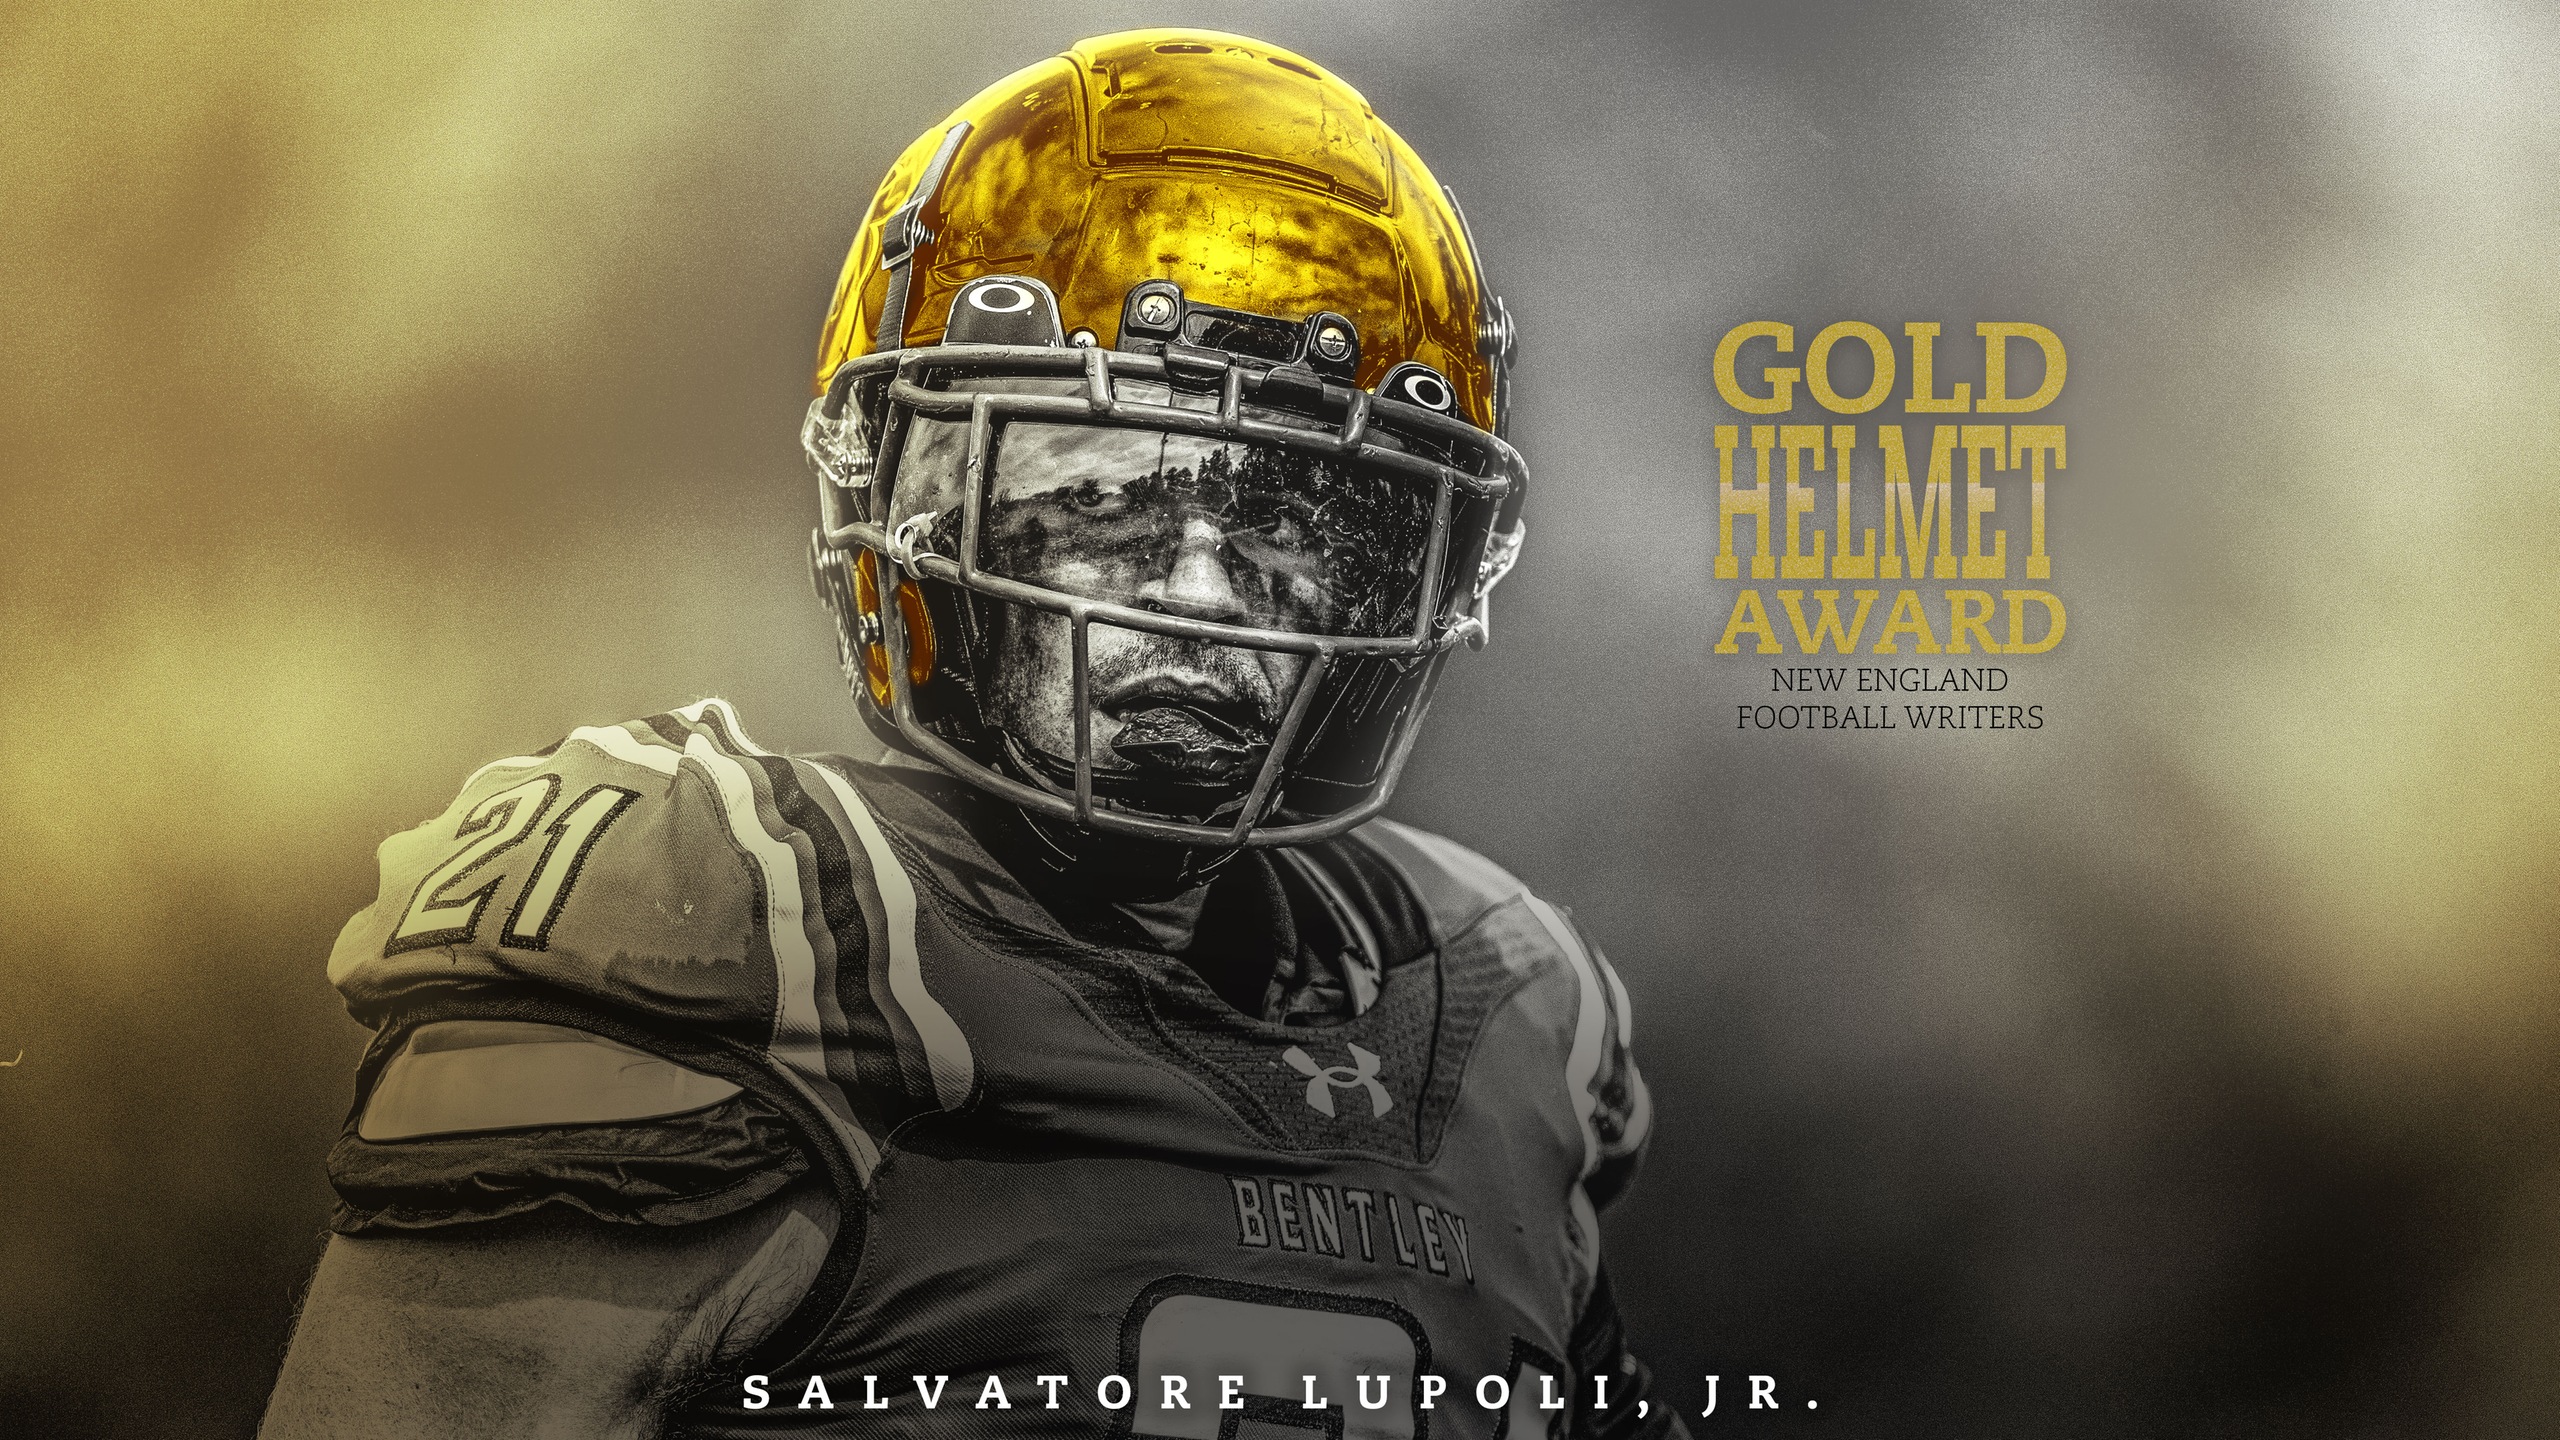 Lupoli earns prestigious Gold Helmet award